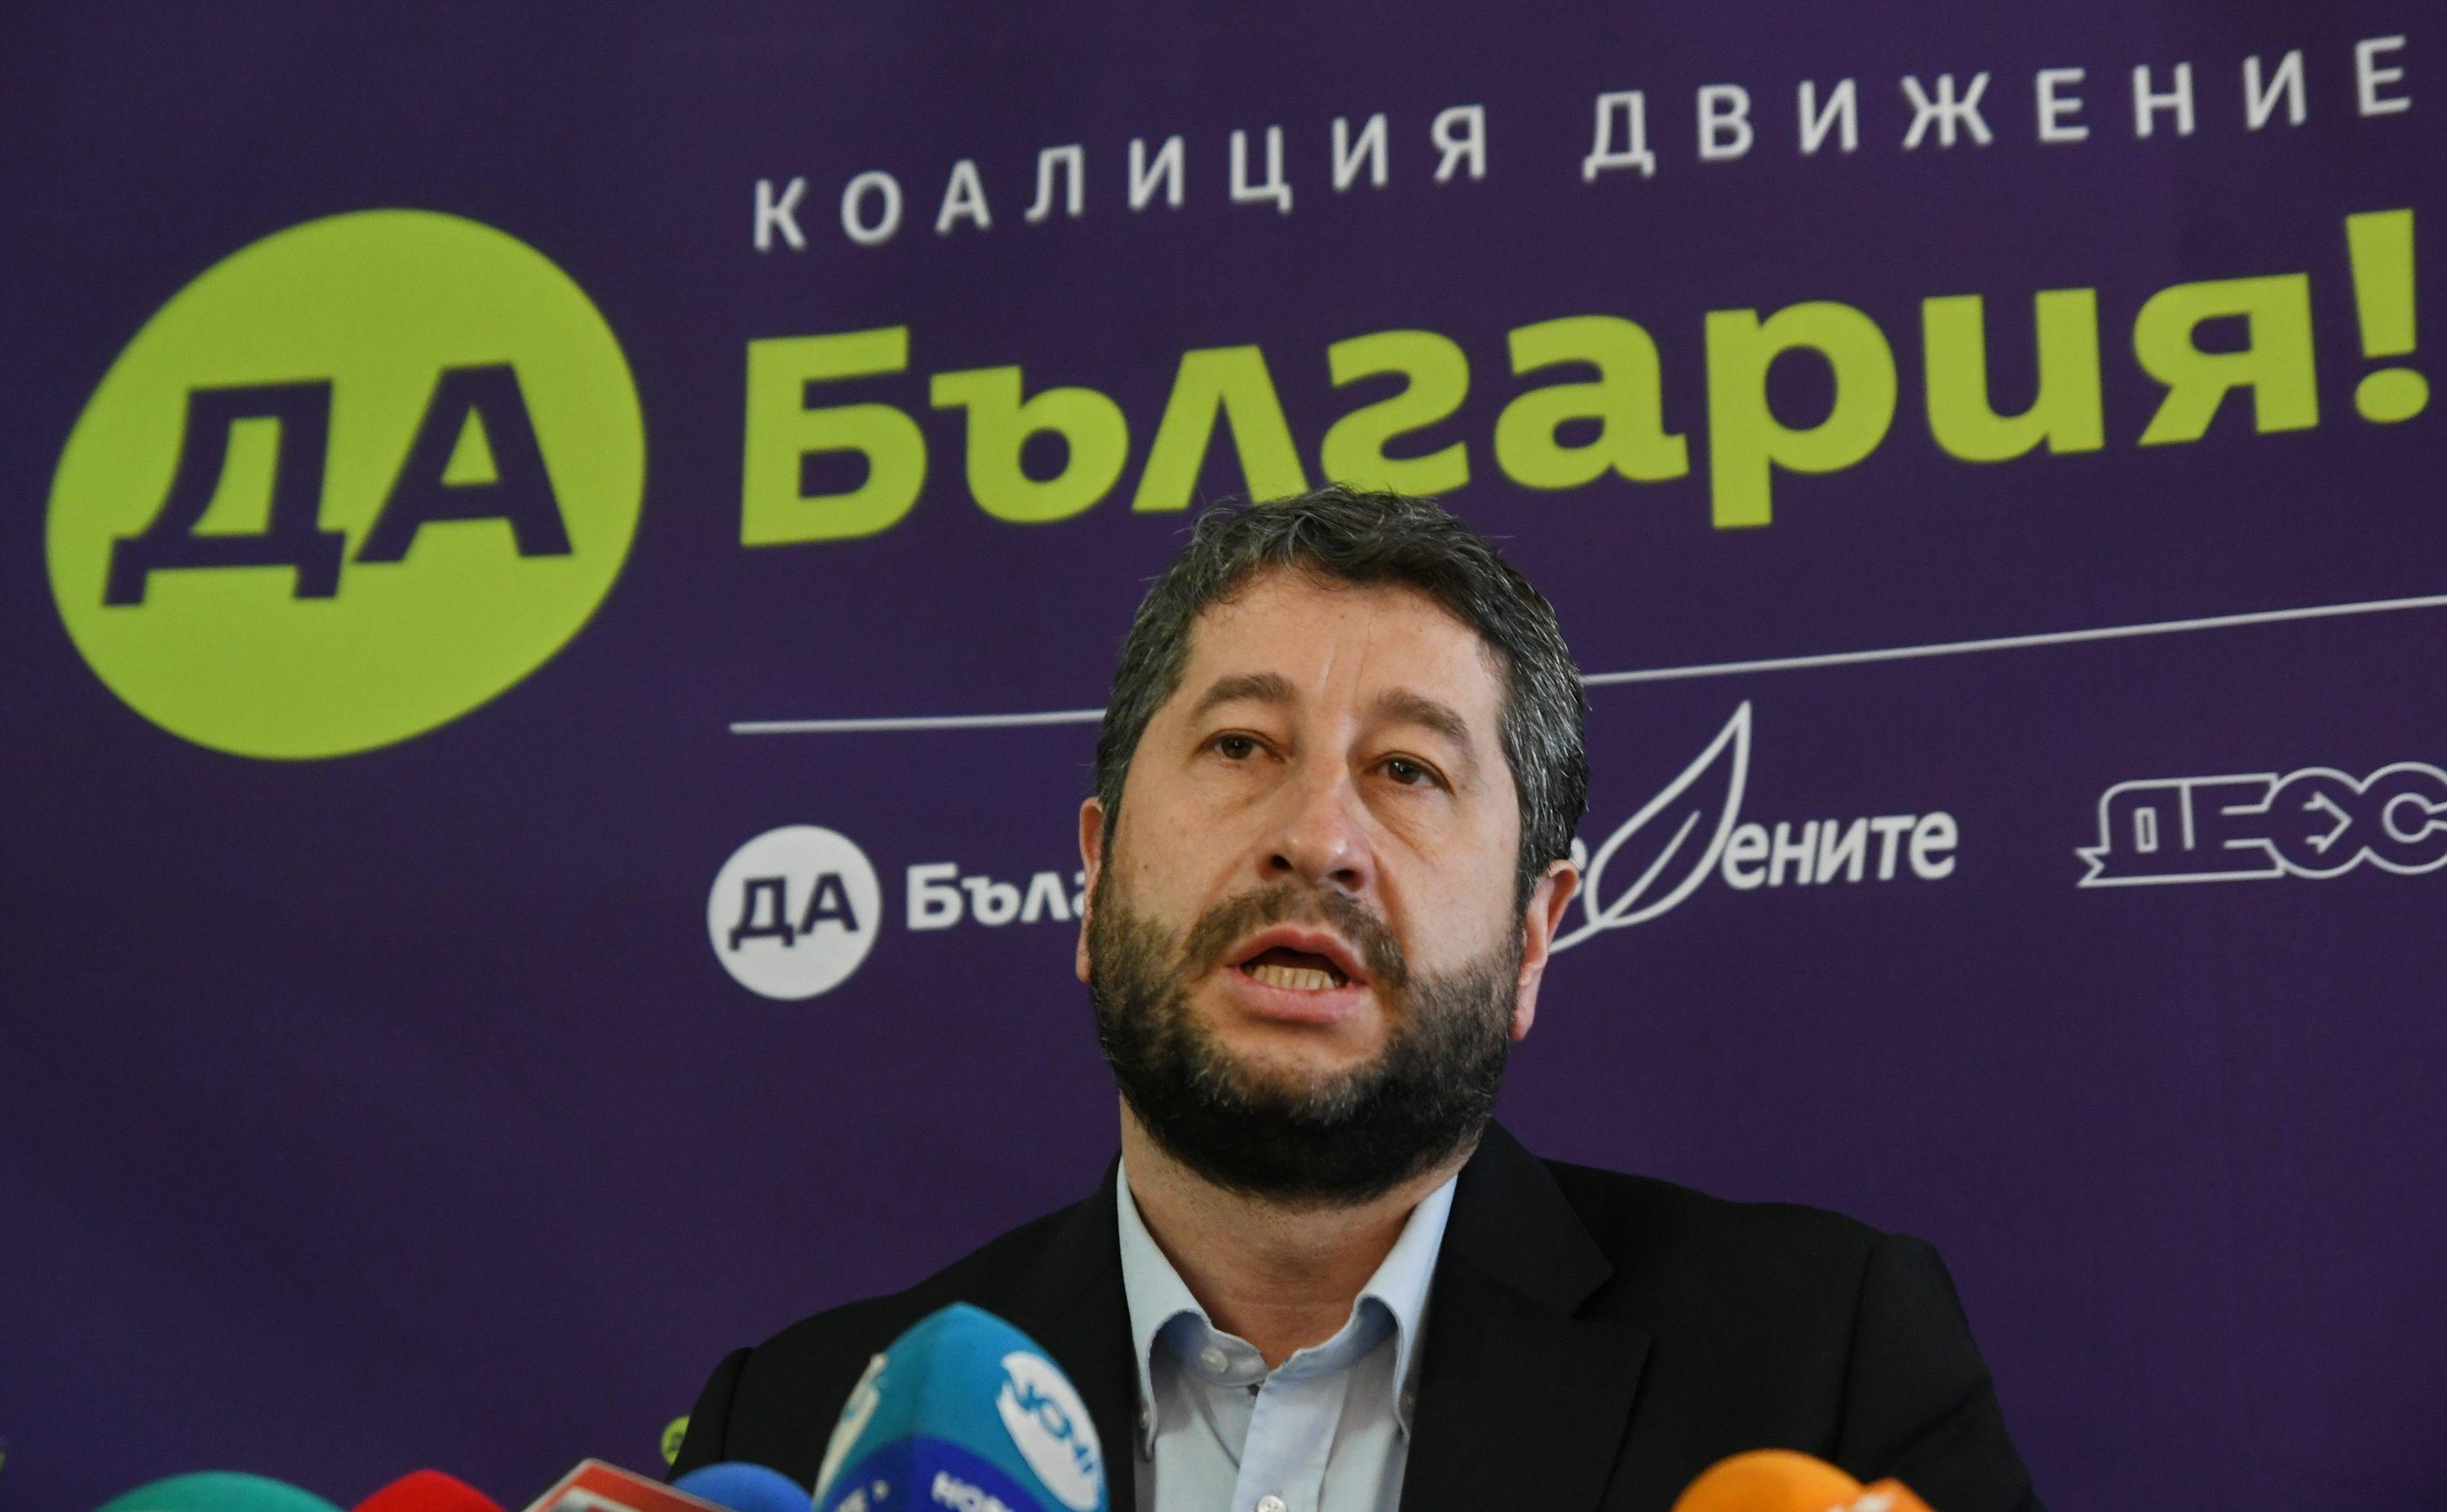 Лидерът на ”Да, България” изрази съмнения, че в прокуратурата ”на трупчета” стои разследване срещу него